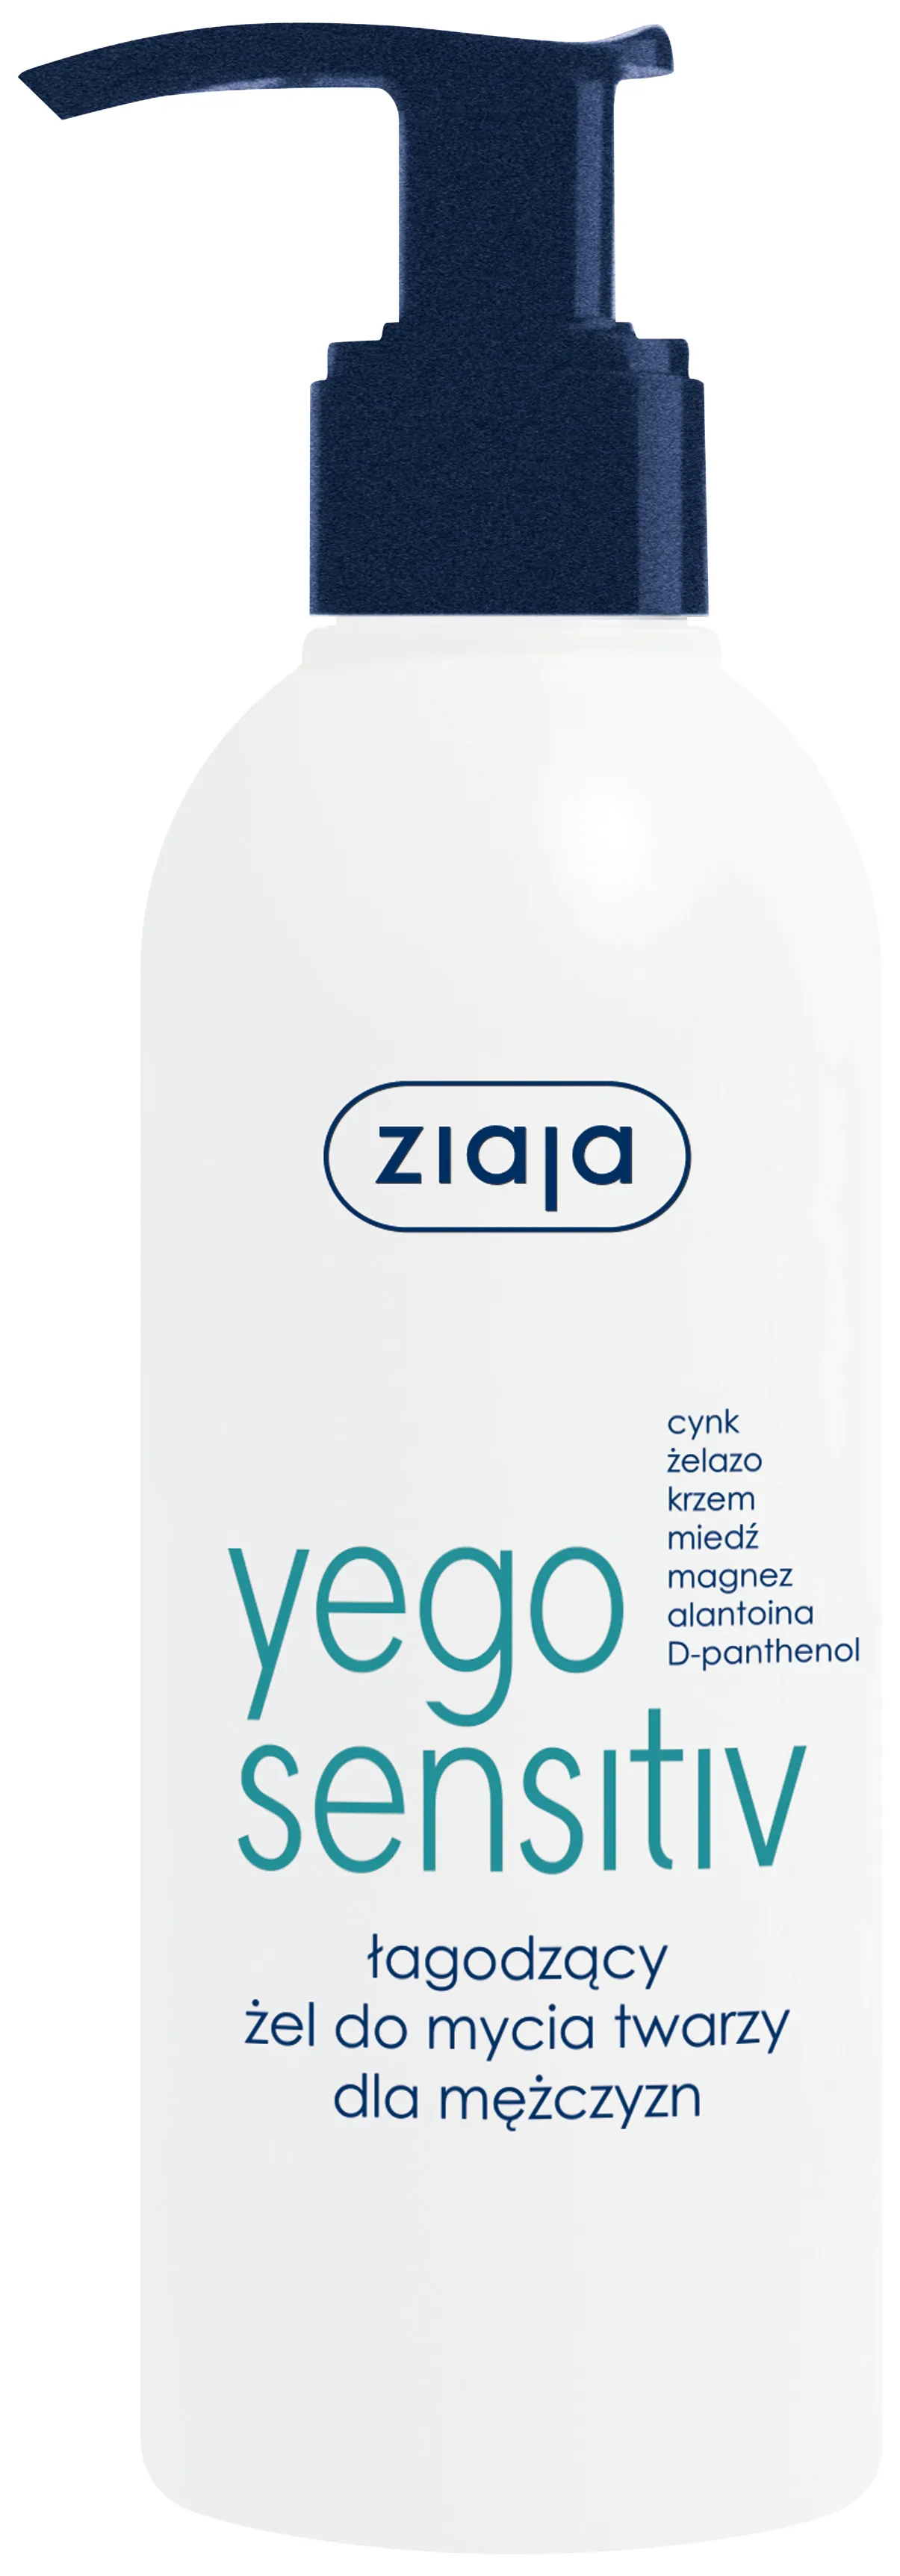 Ziaja Yego Sensitiv, łagodzący żel do mycia twarzy, 200 ml